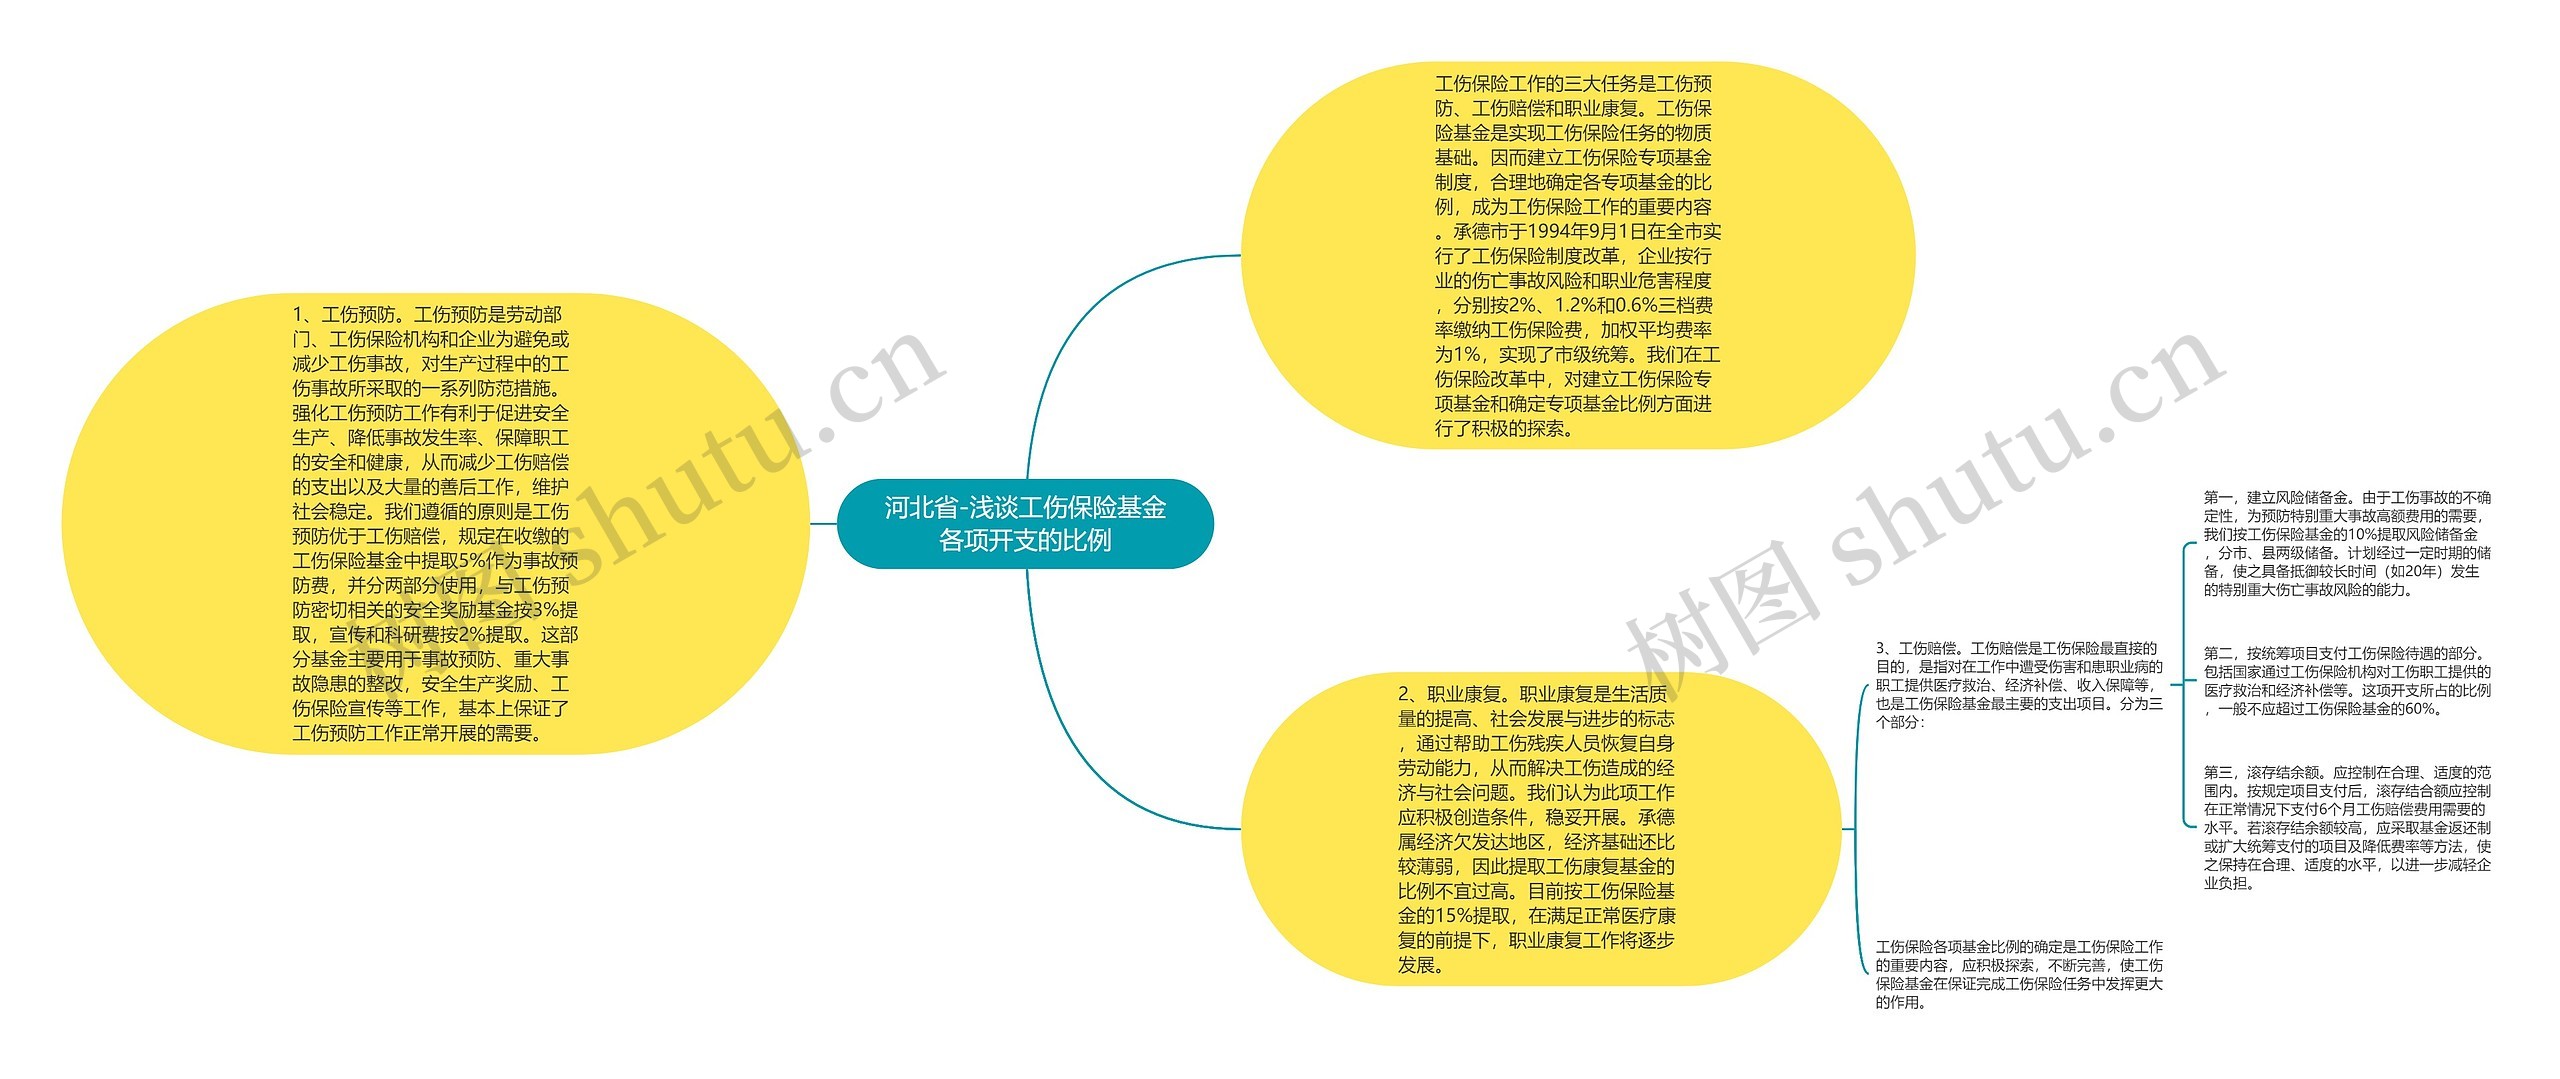 河北省-浅谈工伤保险基金各项开支的比例思维导图